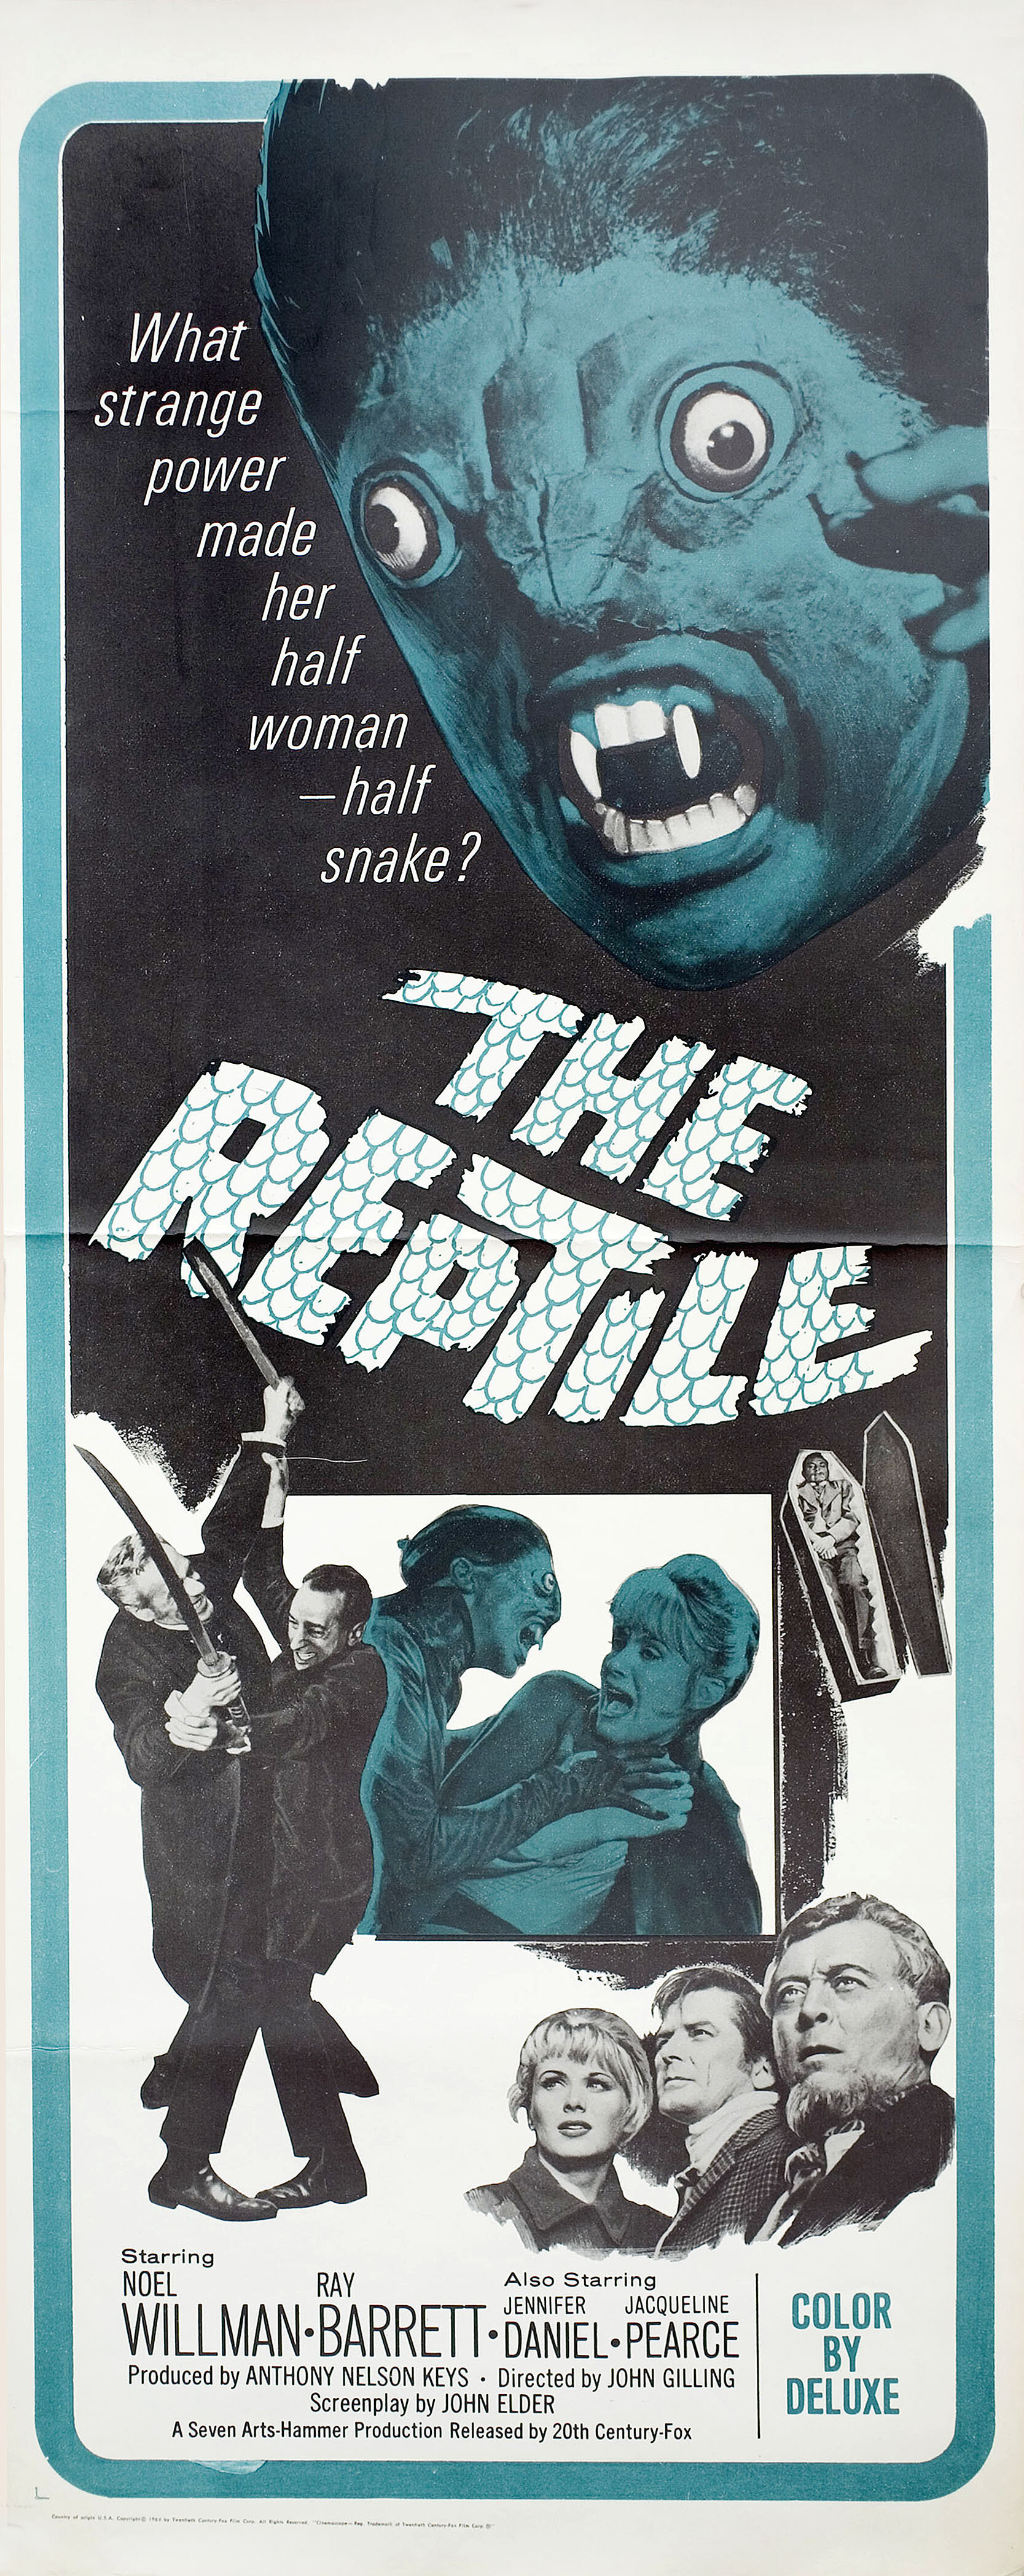 Рептилия (The Reptile, 1966), режиссёр Джон Джиллинг, американский постер к фильму (ужасы, 1966 год)